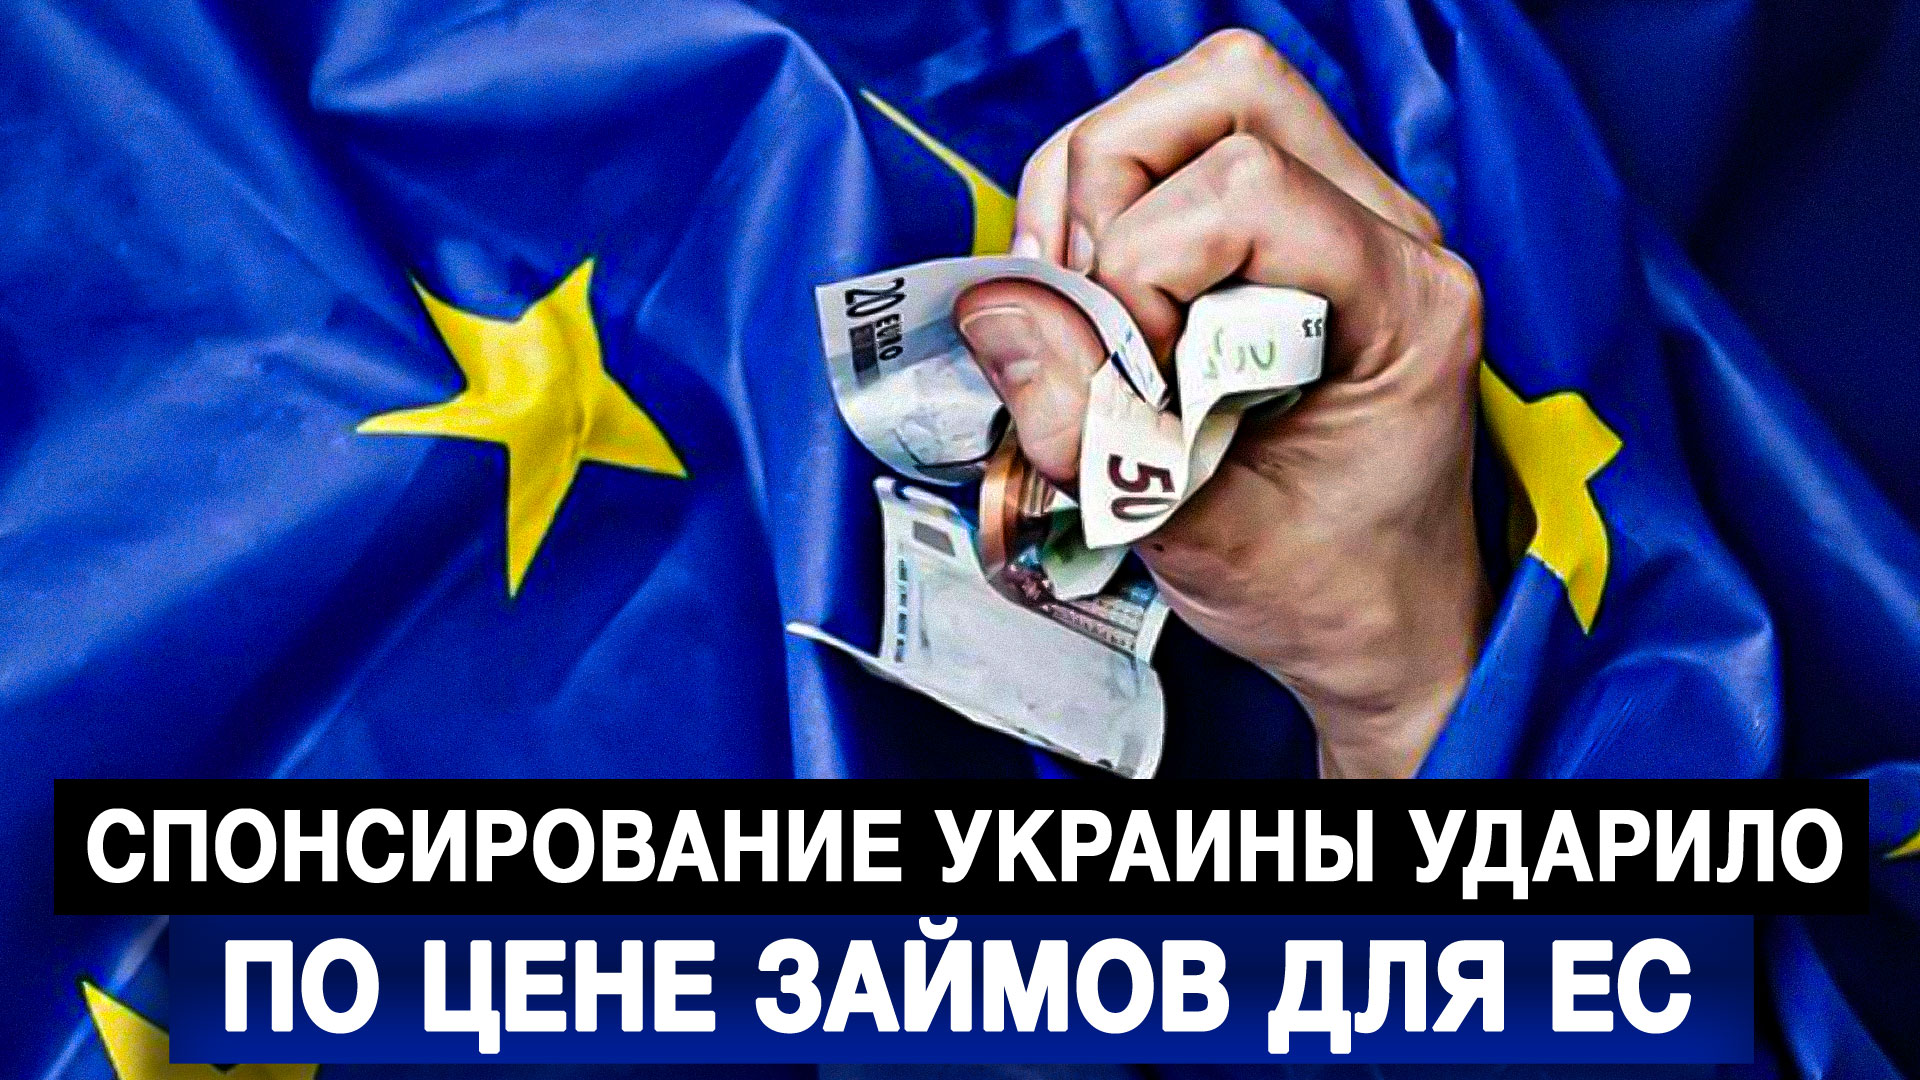 Спонсирование Украины ударило по цене займов для ЕС